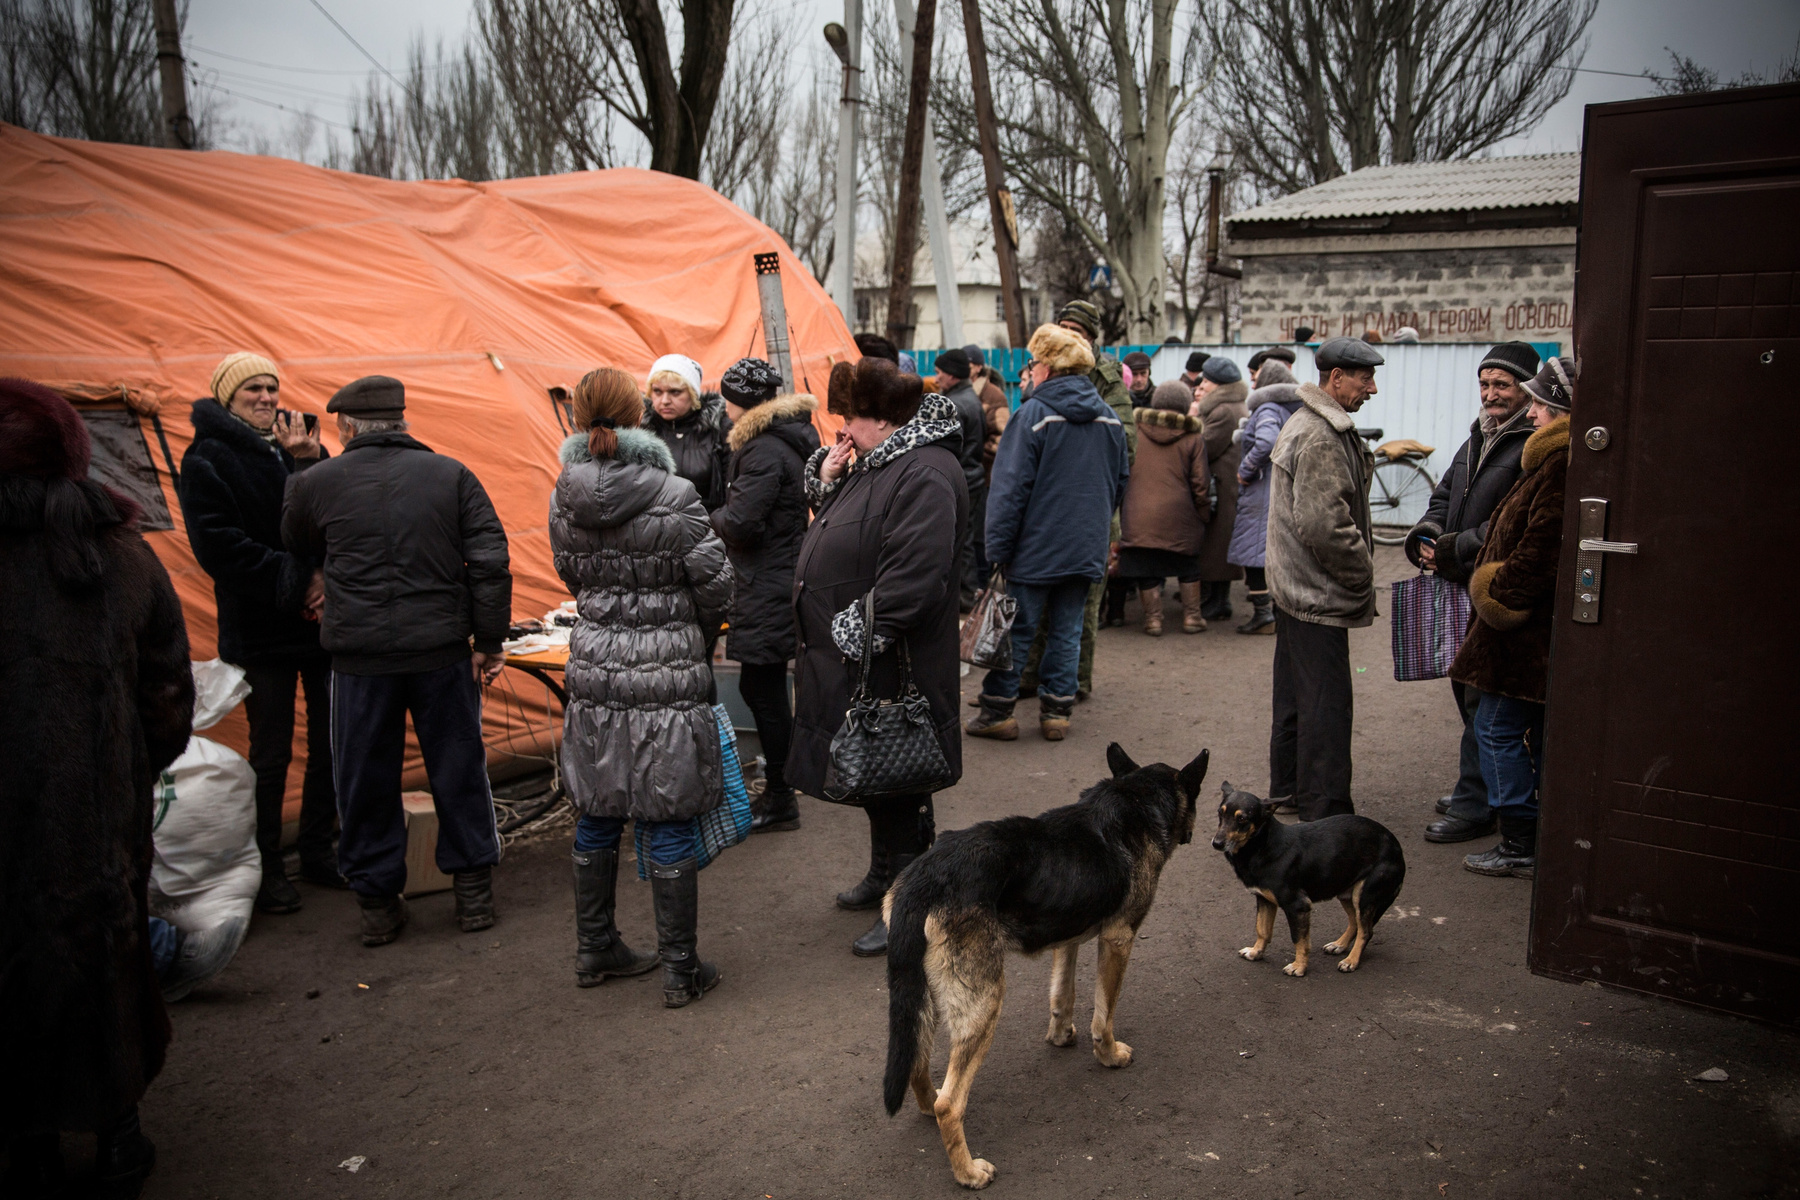 Az ENSZ becslése szerint hatezer civil és katonai áldozata lehet a kelet-ukrajnai konfliktusnak. Ukrán oldalon azonban több száz katona eltűnt, és a szakadárok – és a vélhetően oldalukon harcoló orosz erők – veszteségeit sem pontosan felmérni. Sok az eltűnt civil is, így az áldozatok valós száma végül jóval magasabb is lehet. 